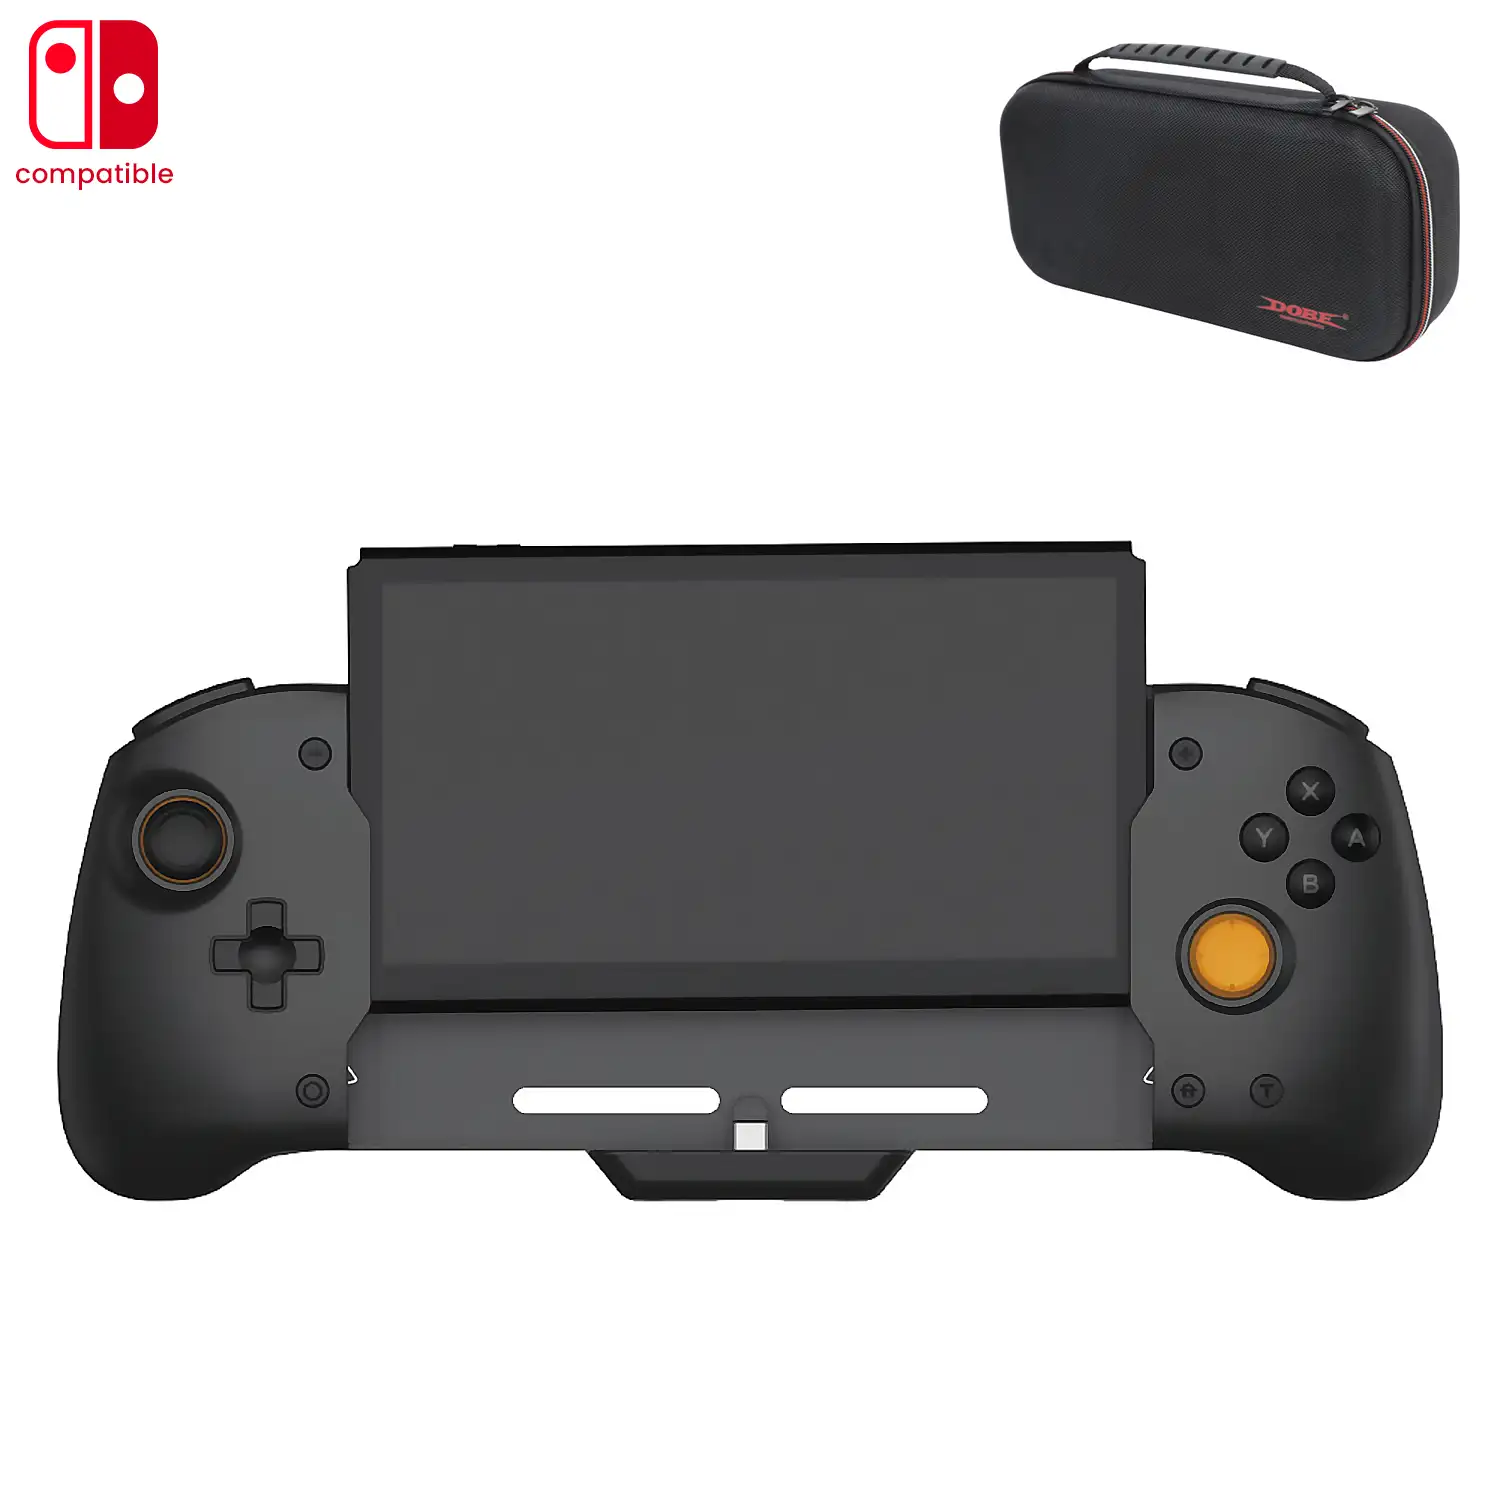 Mando Grip compatible con Nintendo Switch TNS-0160B1. Motores de vibración, sensores giroscópicos, alta ergonomía. Incluye funda semirígida.